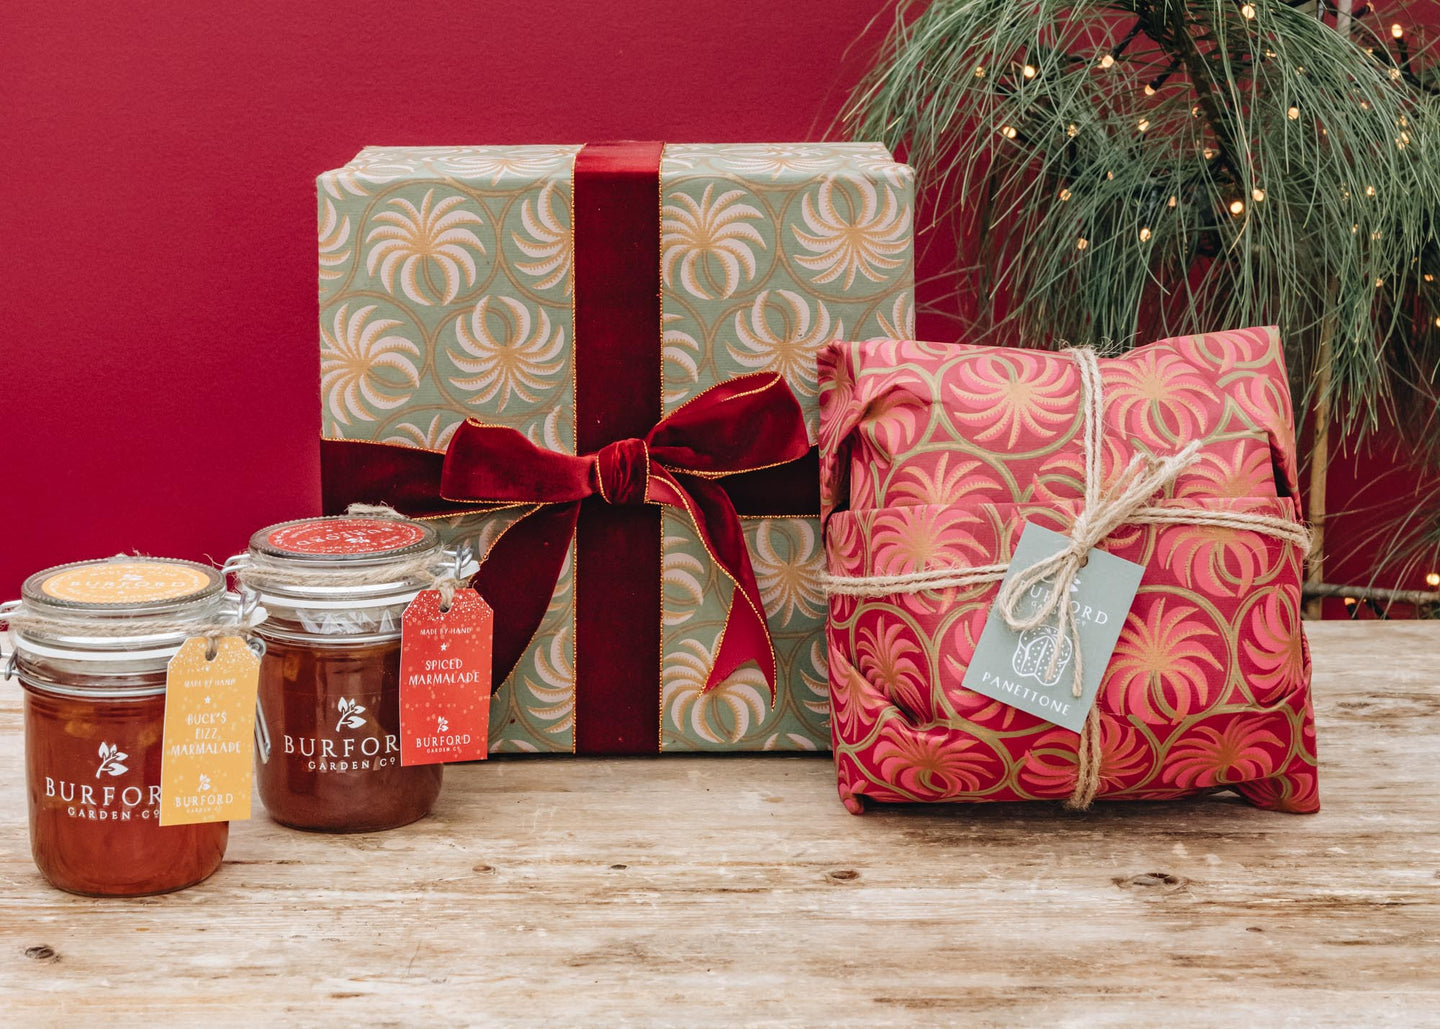 Burford Garden Co. The Marmalade Gift Box